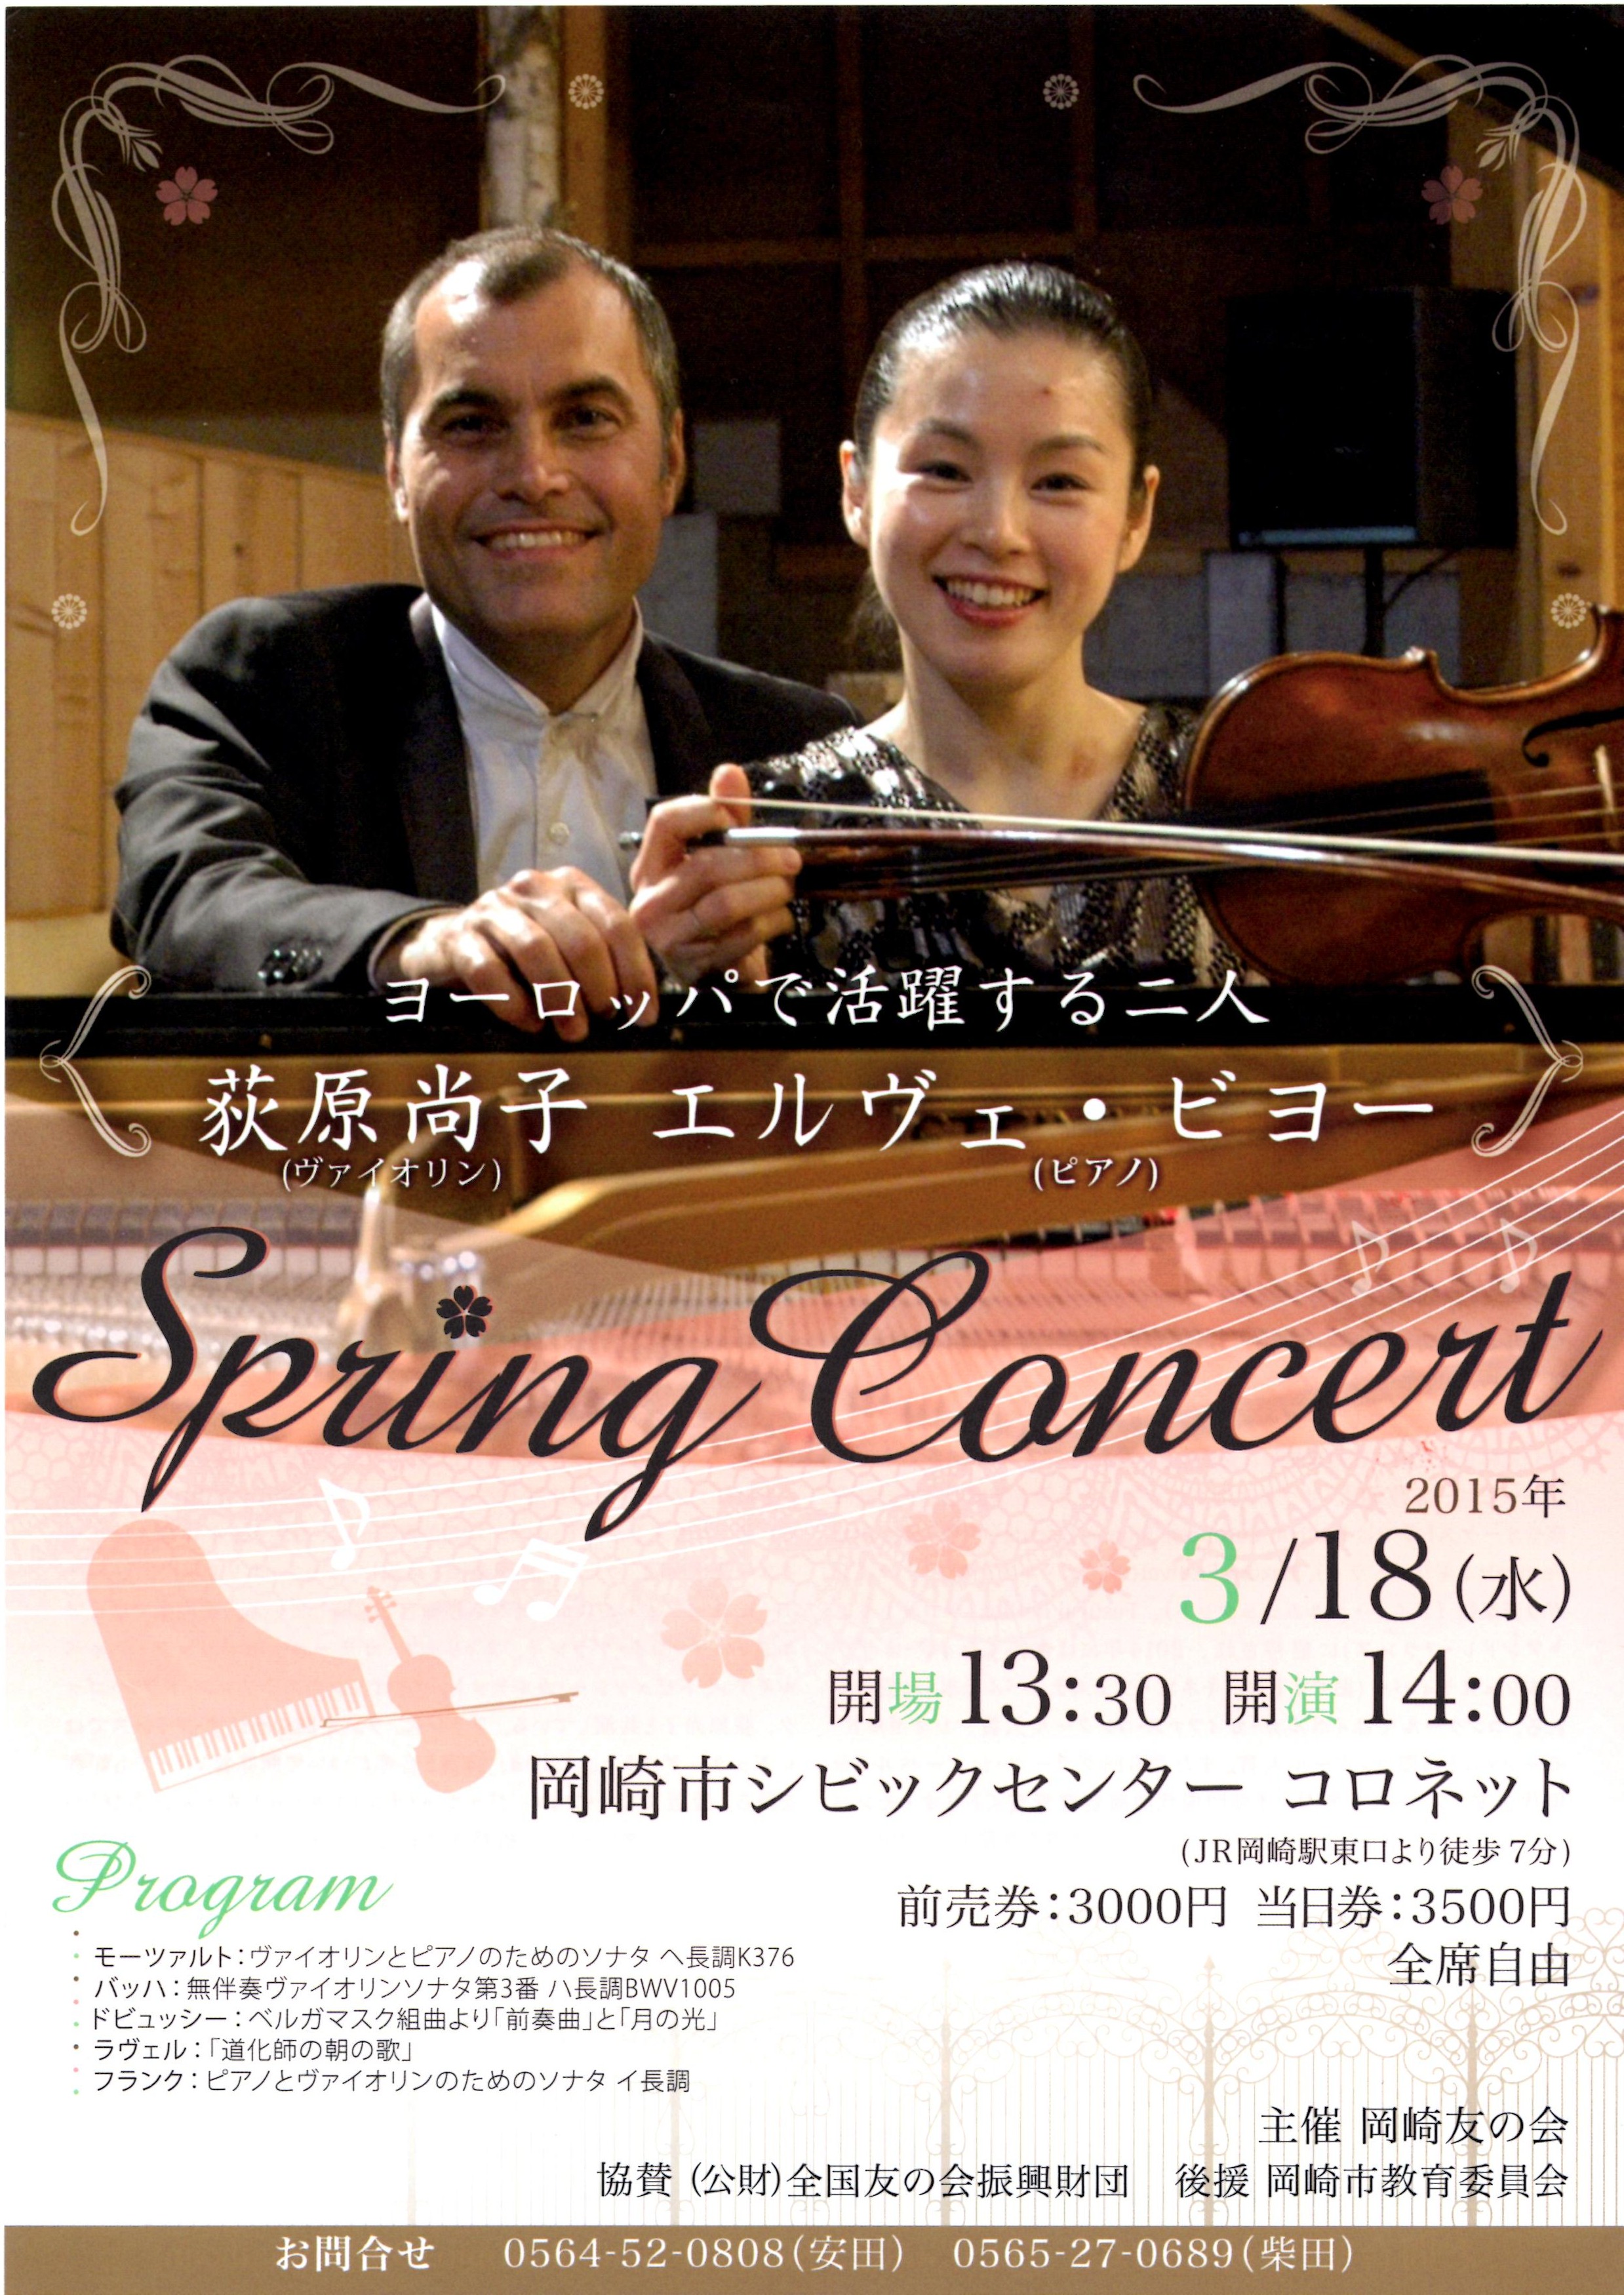 Spring concert